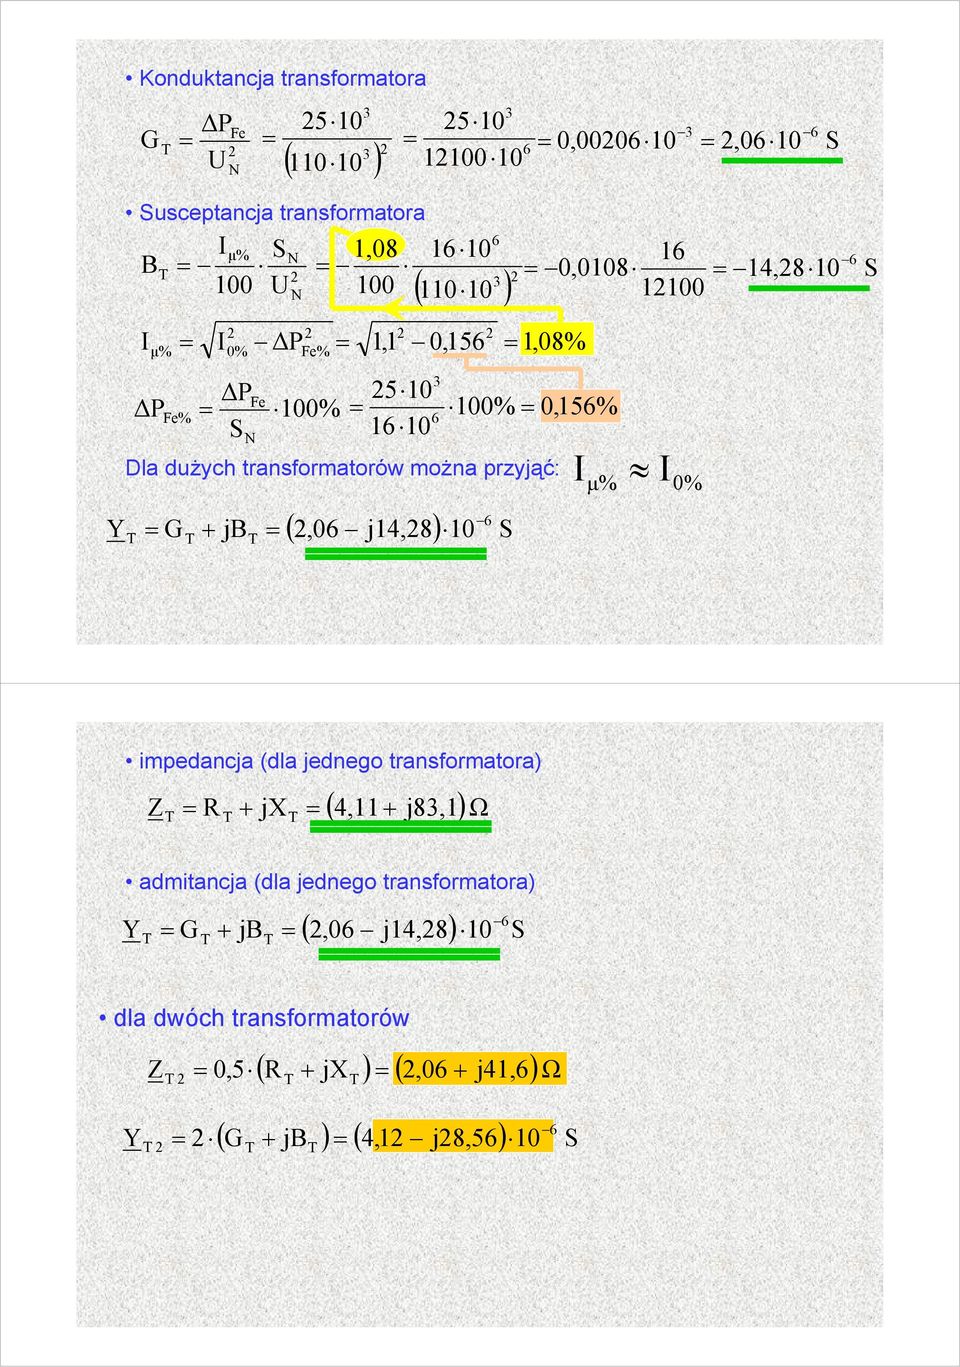 0,0108 14,8 1100 1,08% 0% 0,15% Iμ% I 0% impedancja (da jednego transformatora Z + j ( 4,11 + j8,1ω